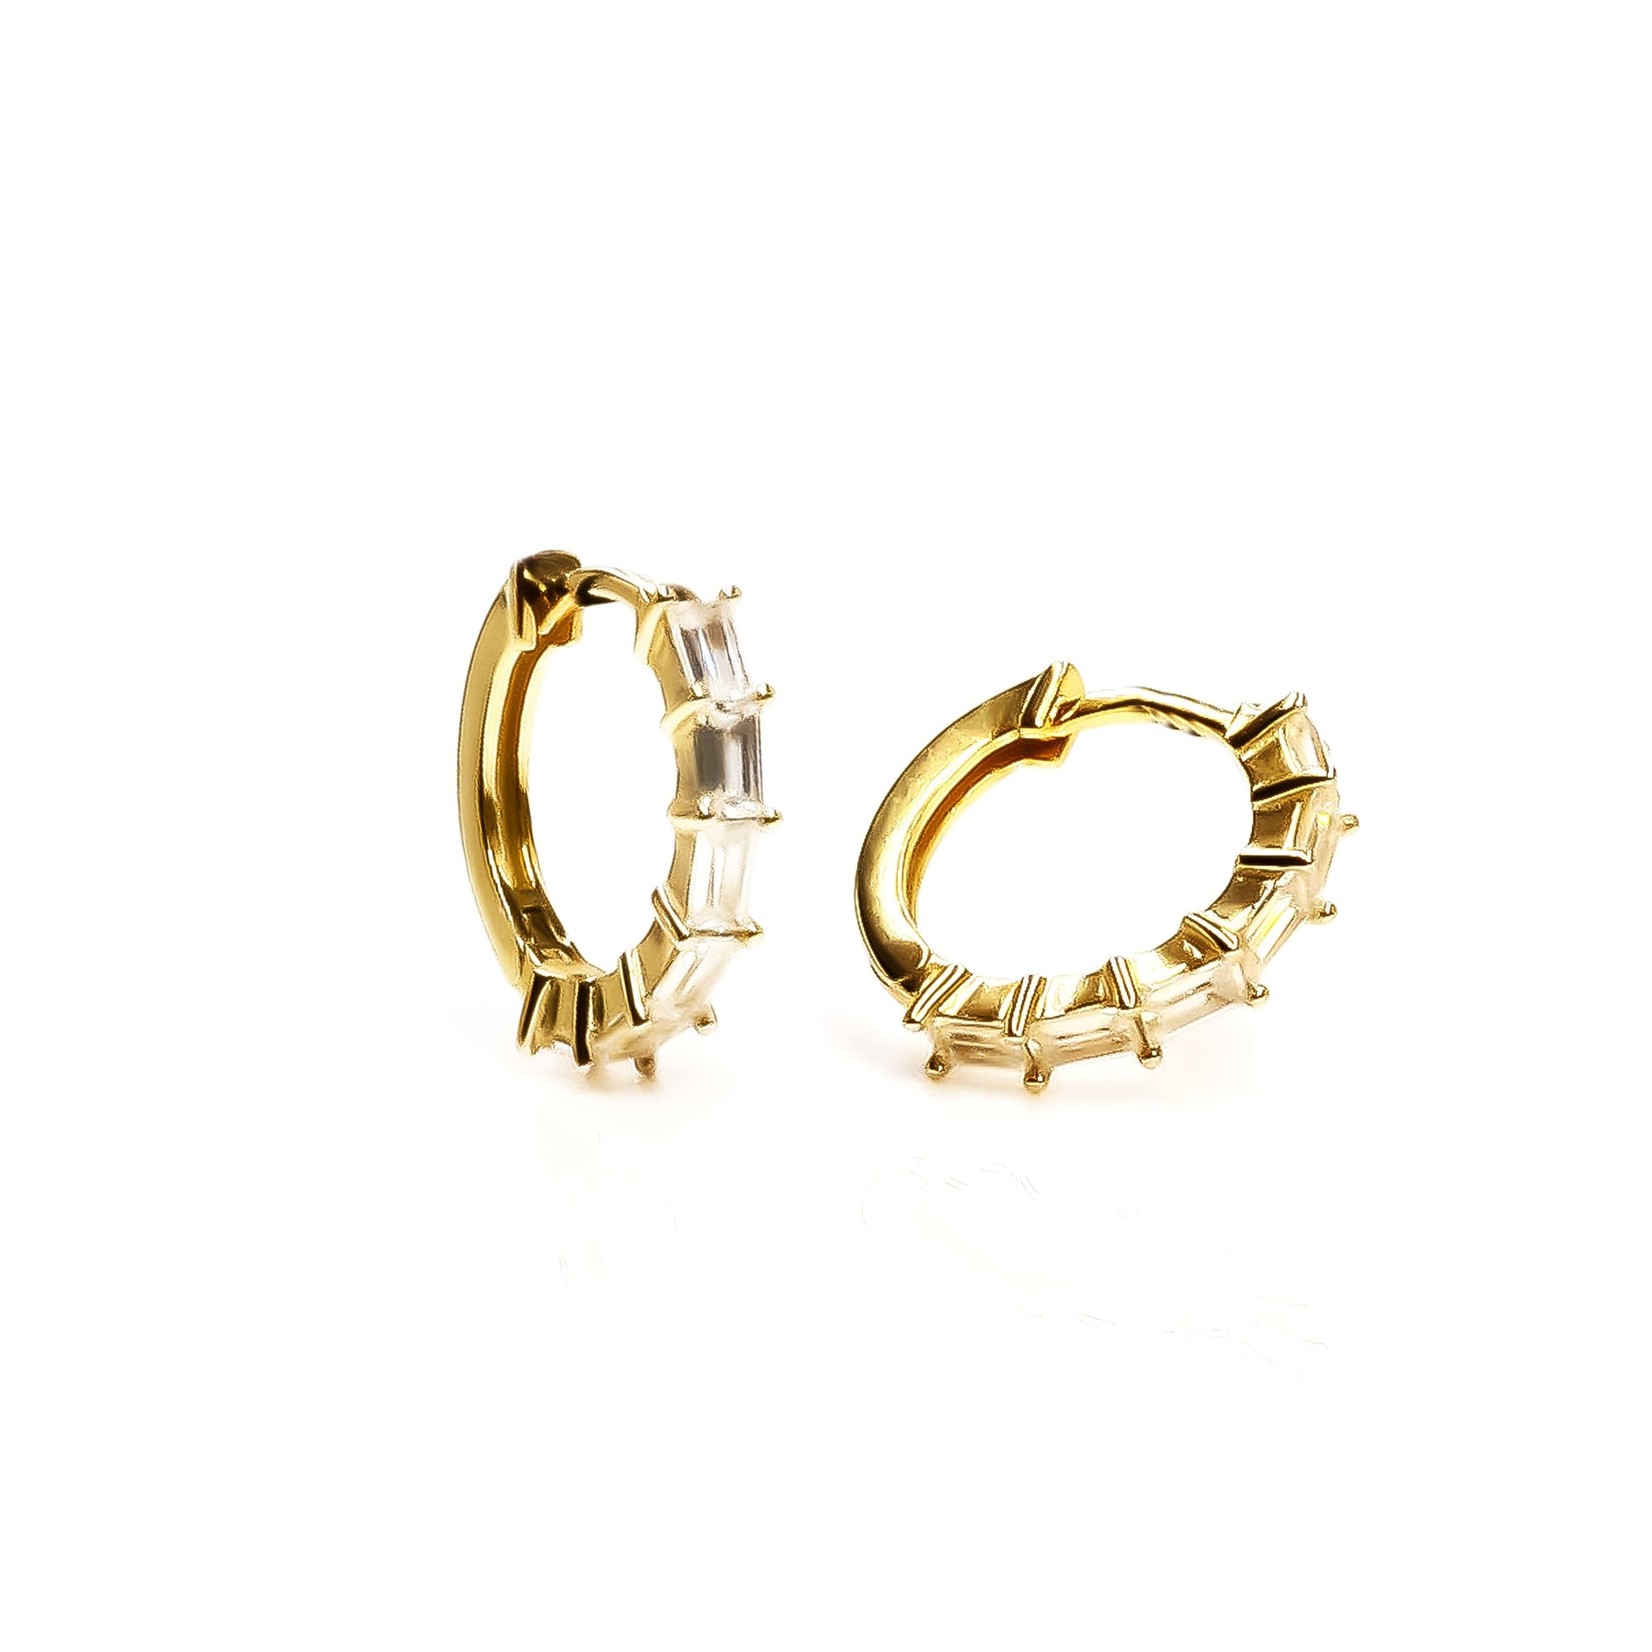 eLiasz and eLLa "Romantic" CZ Hoop Earrings in Gold